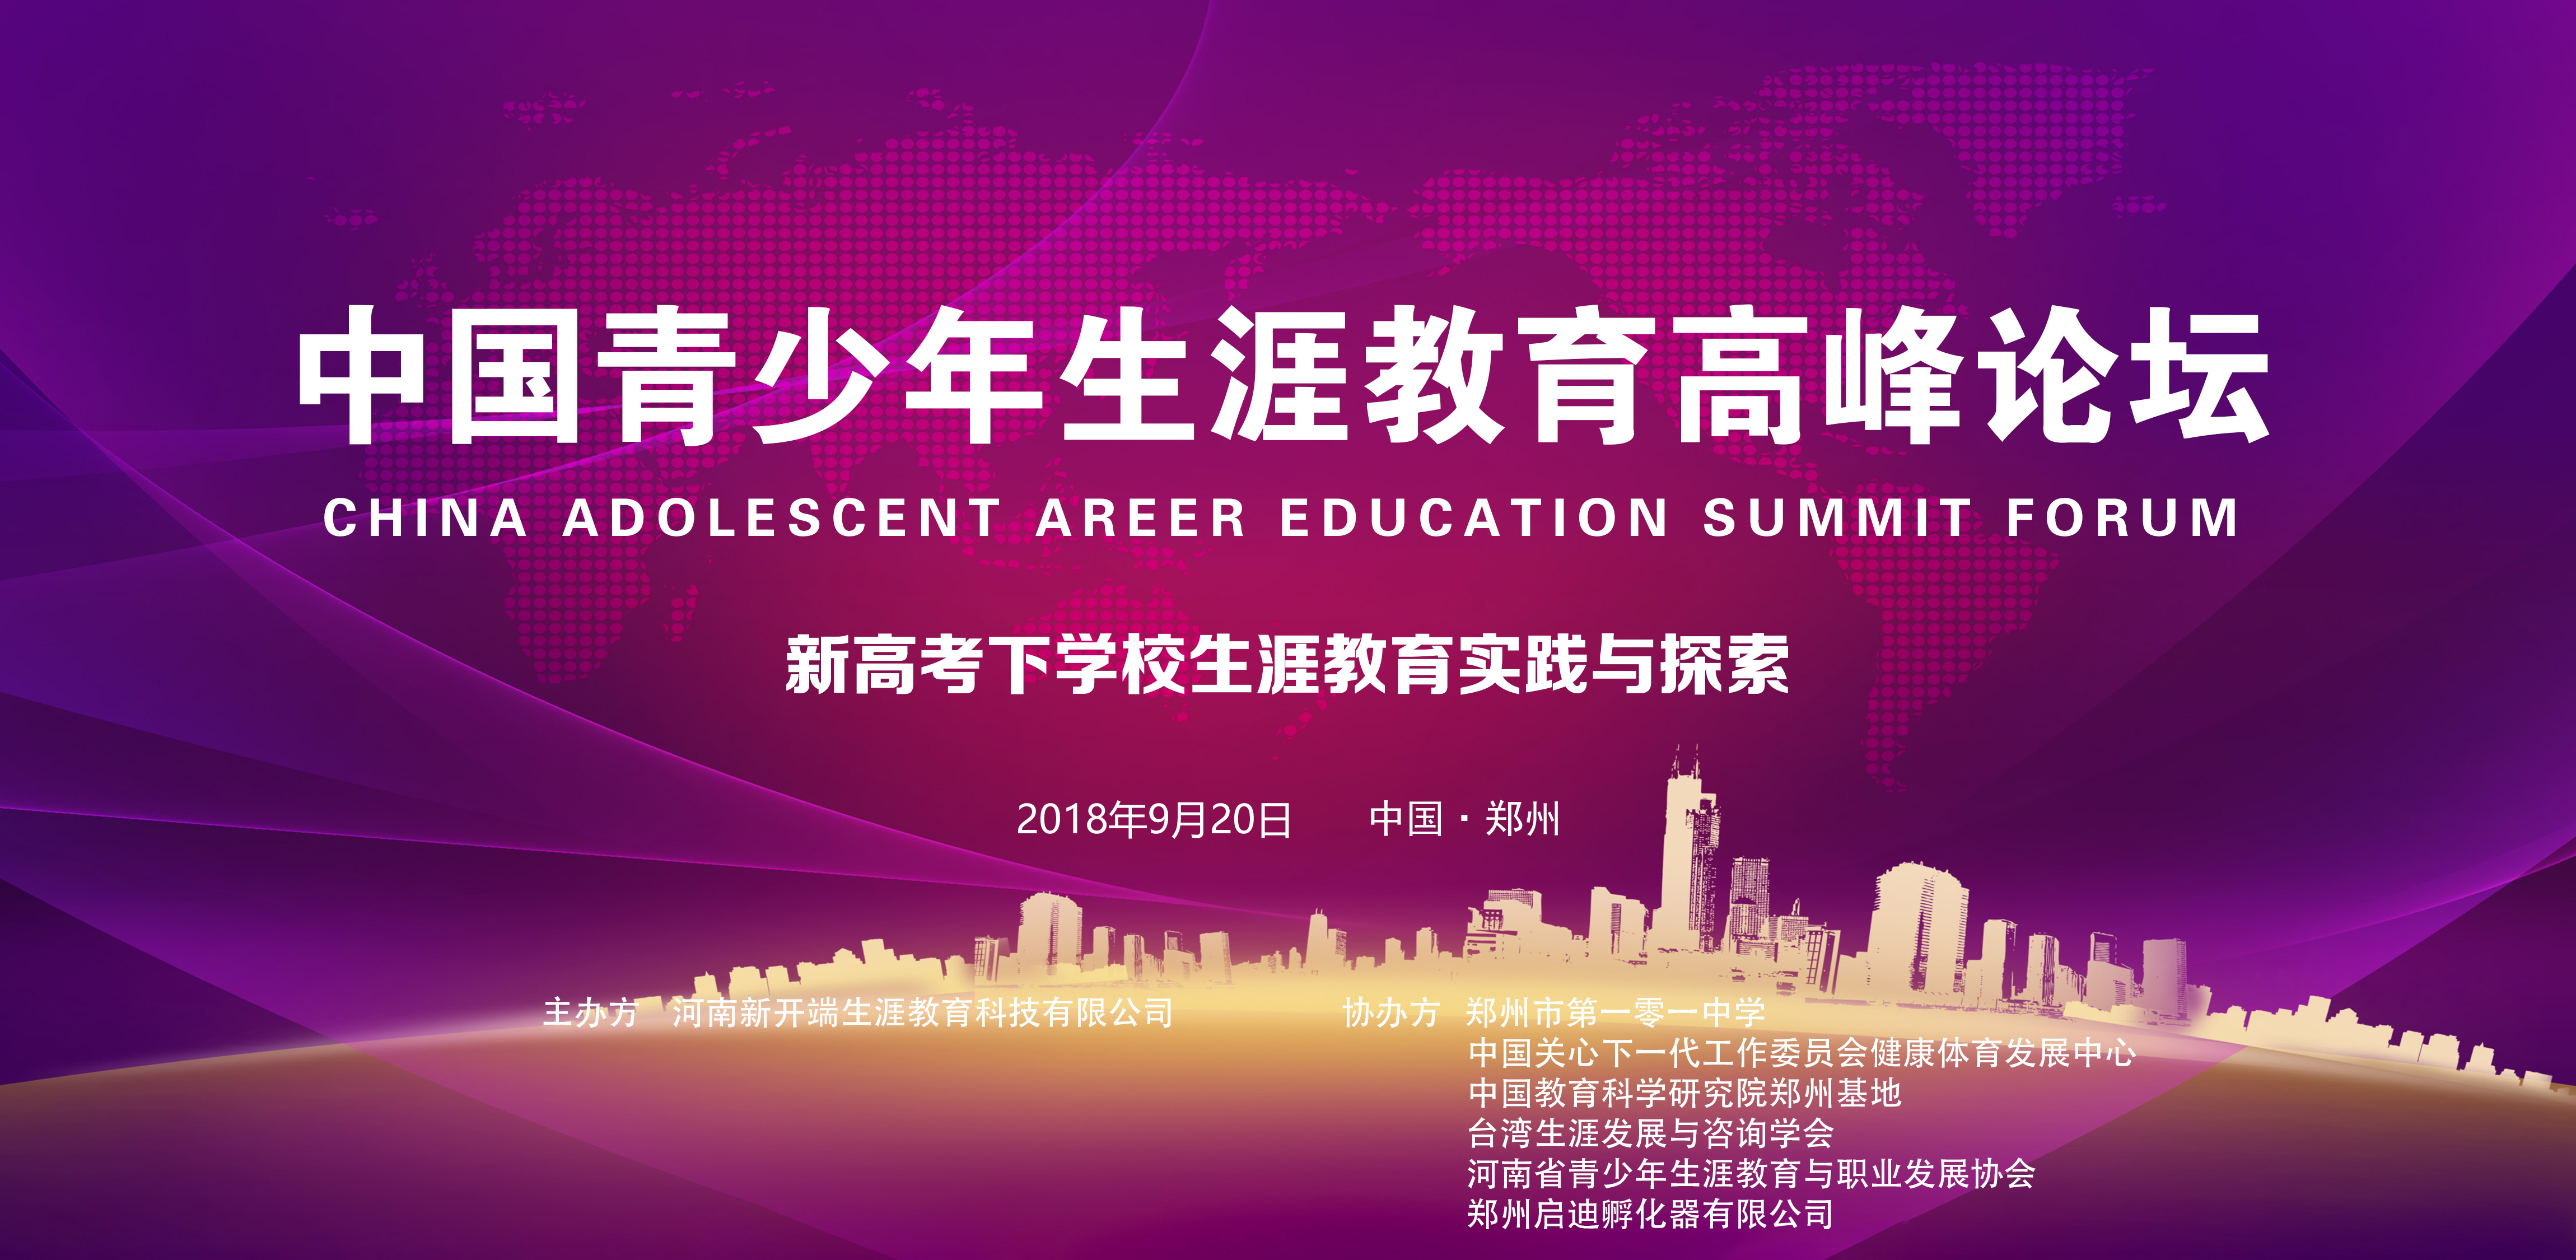 中国青少年生涯教育高峰论坛